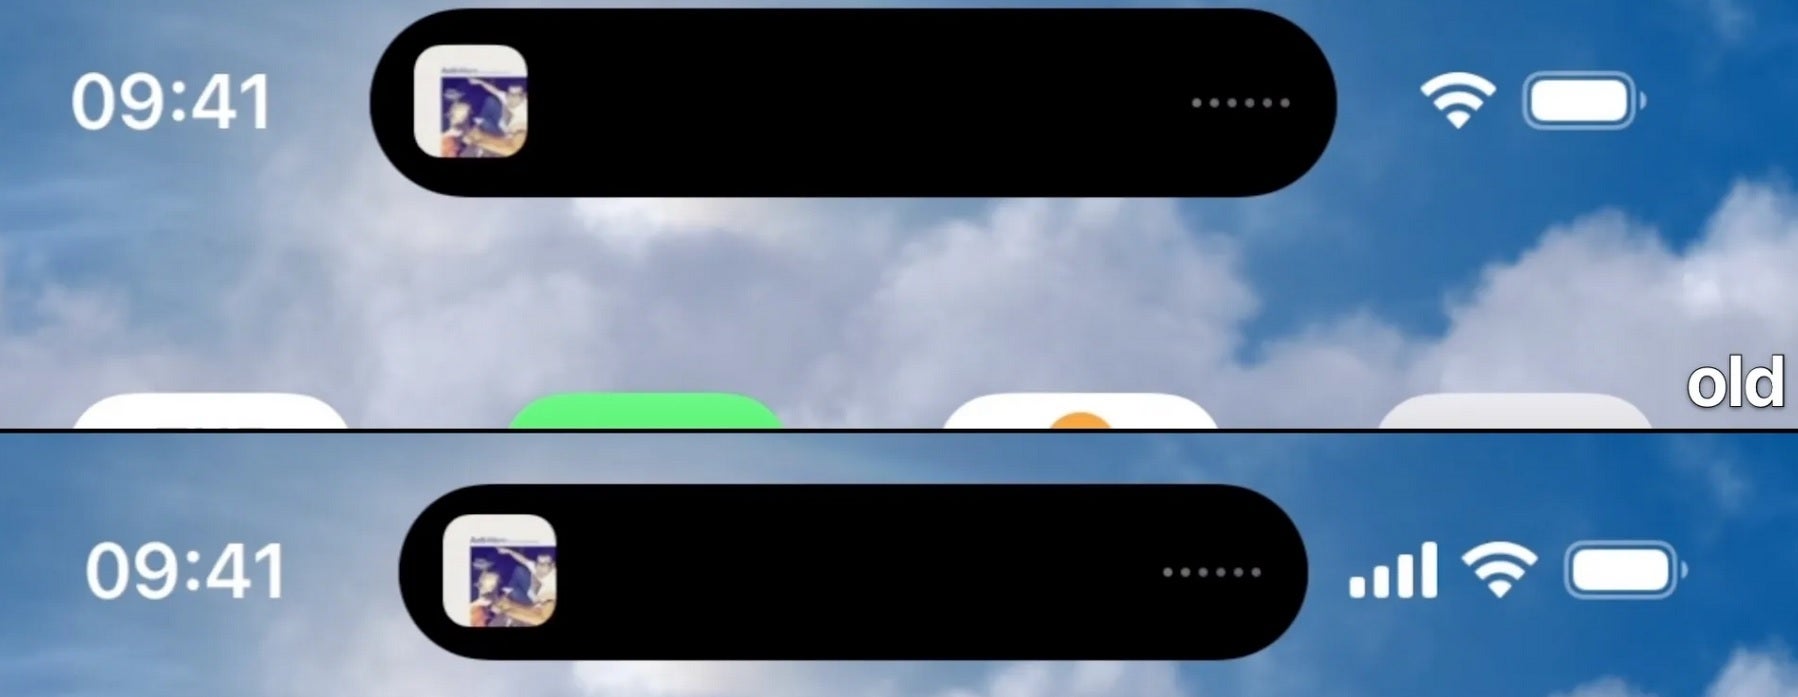 Pulau Dinamis yang lebih sempit untuk iPhone 14 Pro di iOS 16.2 Beta memungkinkan tiga ikon di bilah status.  Kredit Gambar 9to5Google - Pulau Dinamis mendapat perubahan kecil namun penting di iOS 16.2 Beta terbaru